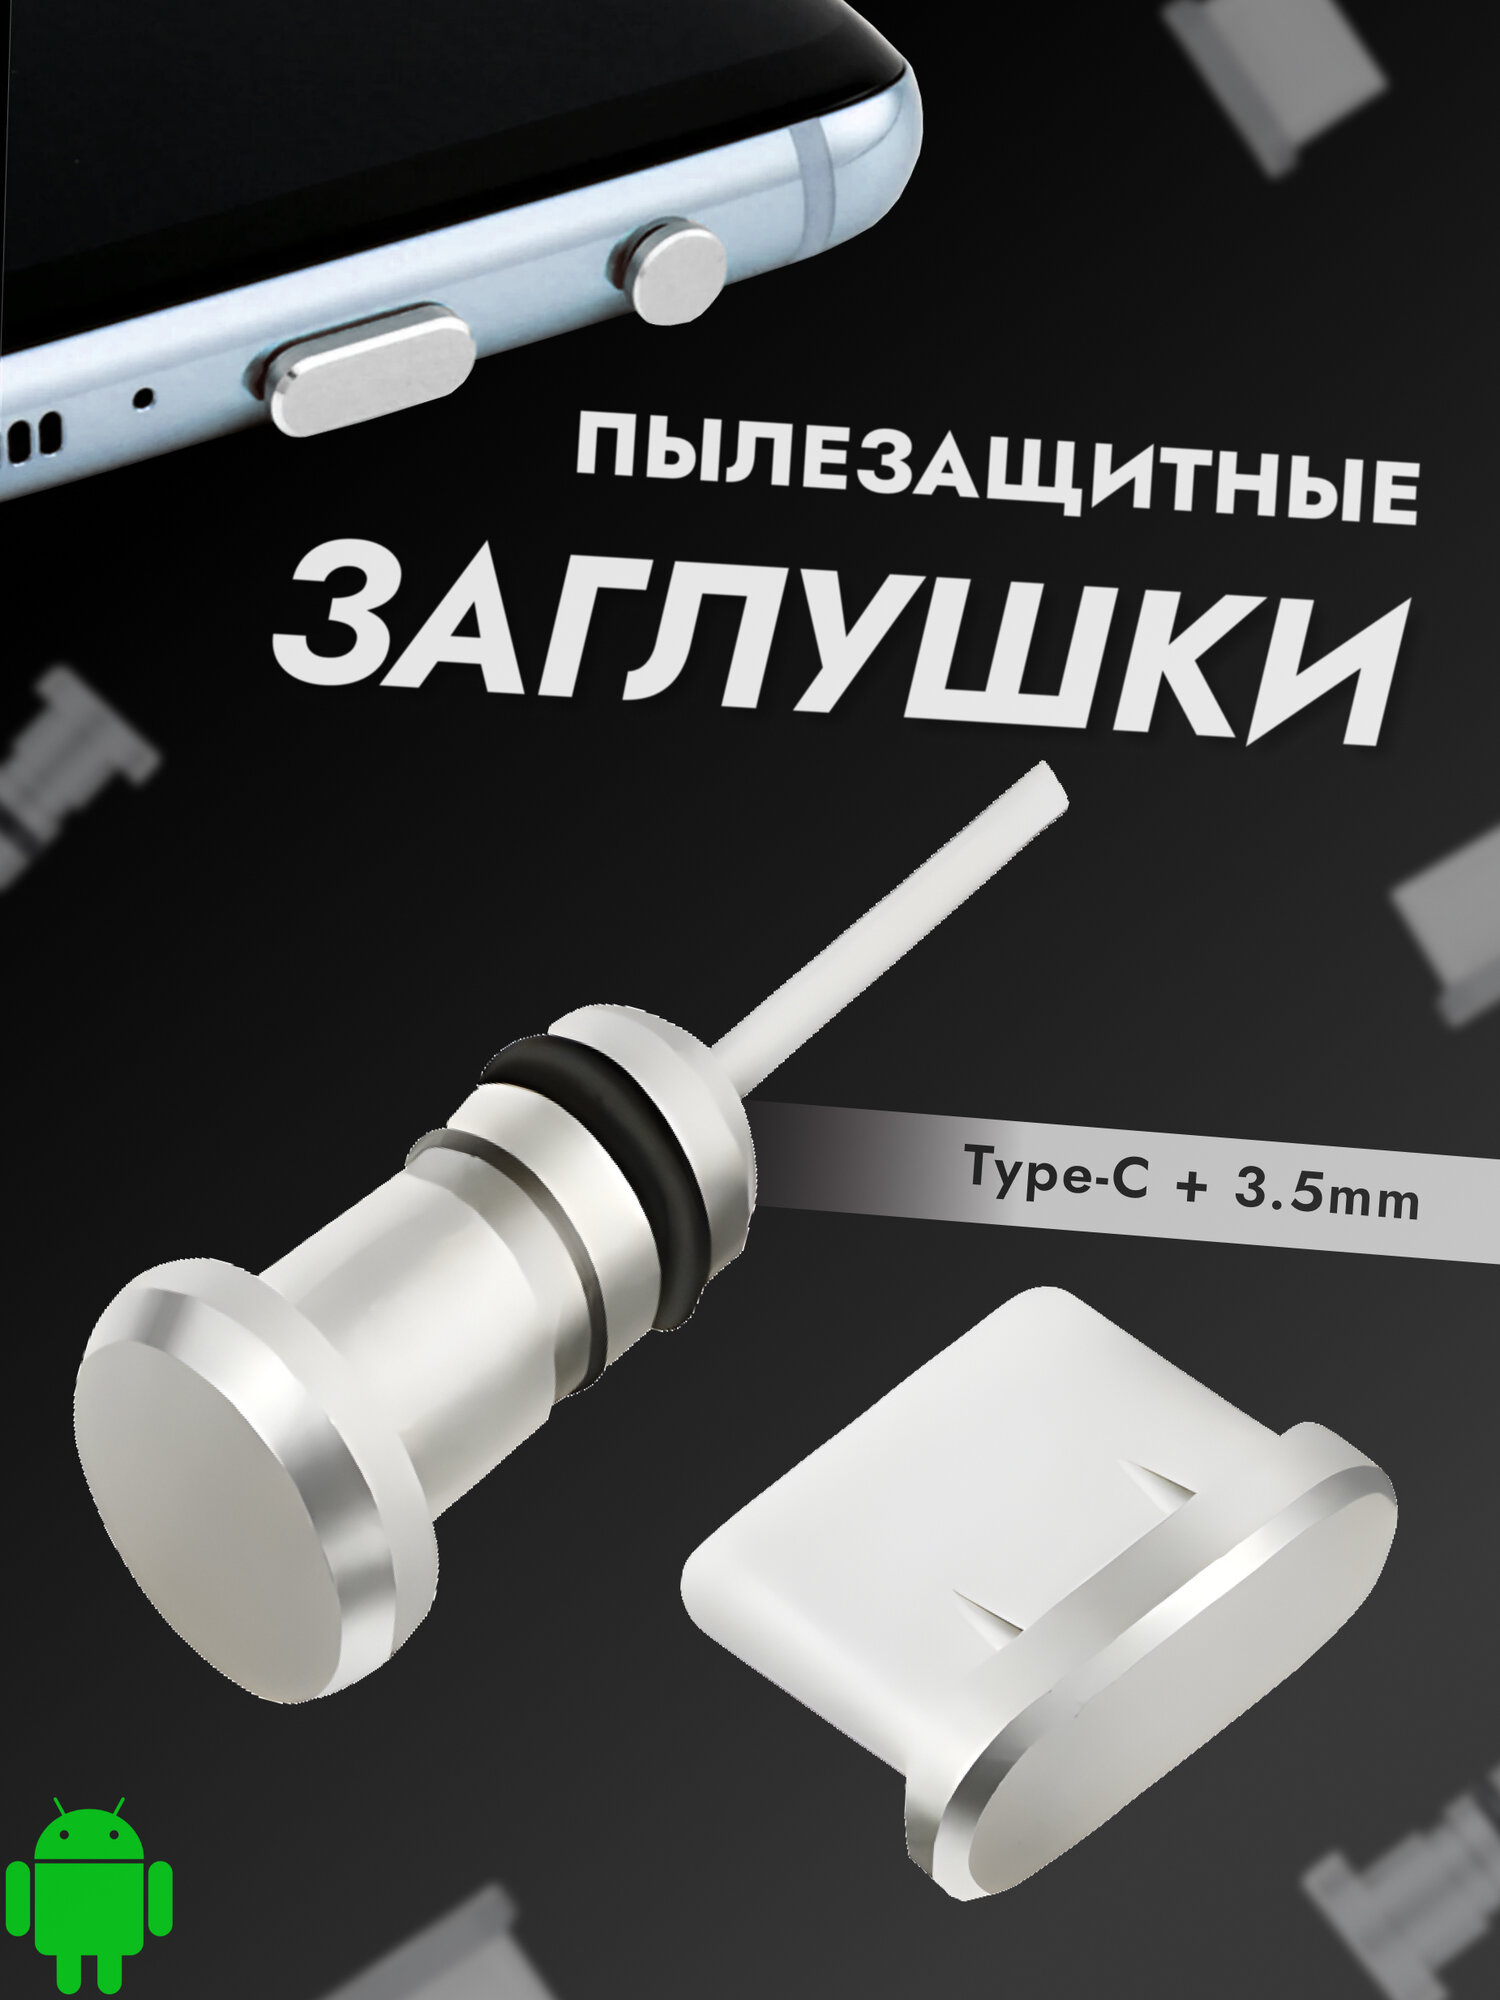 Комплект универсальных пылезащитных заглушек для TYPE-C и 35 аудио разъемов телефонов и планшетов